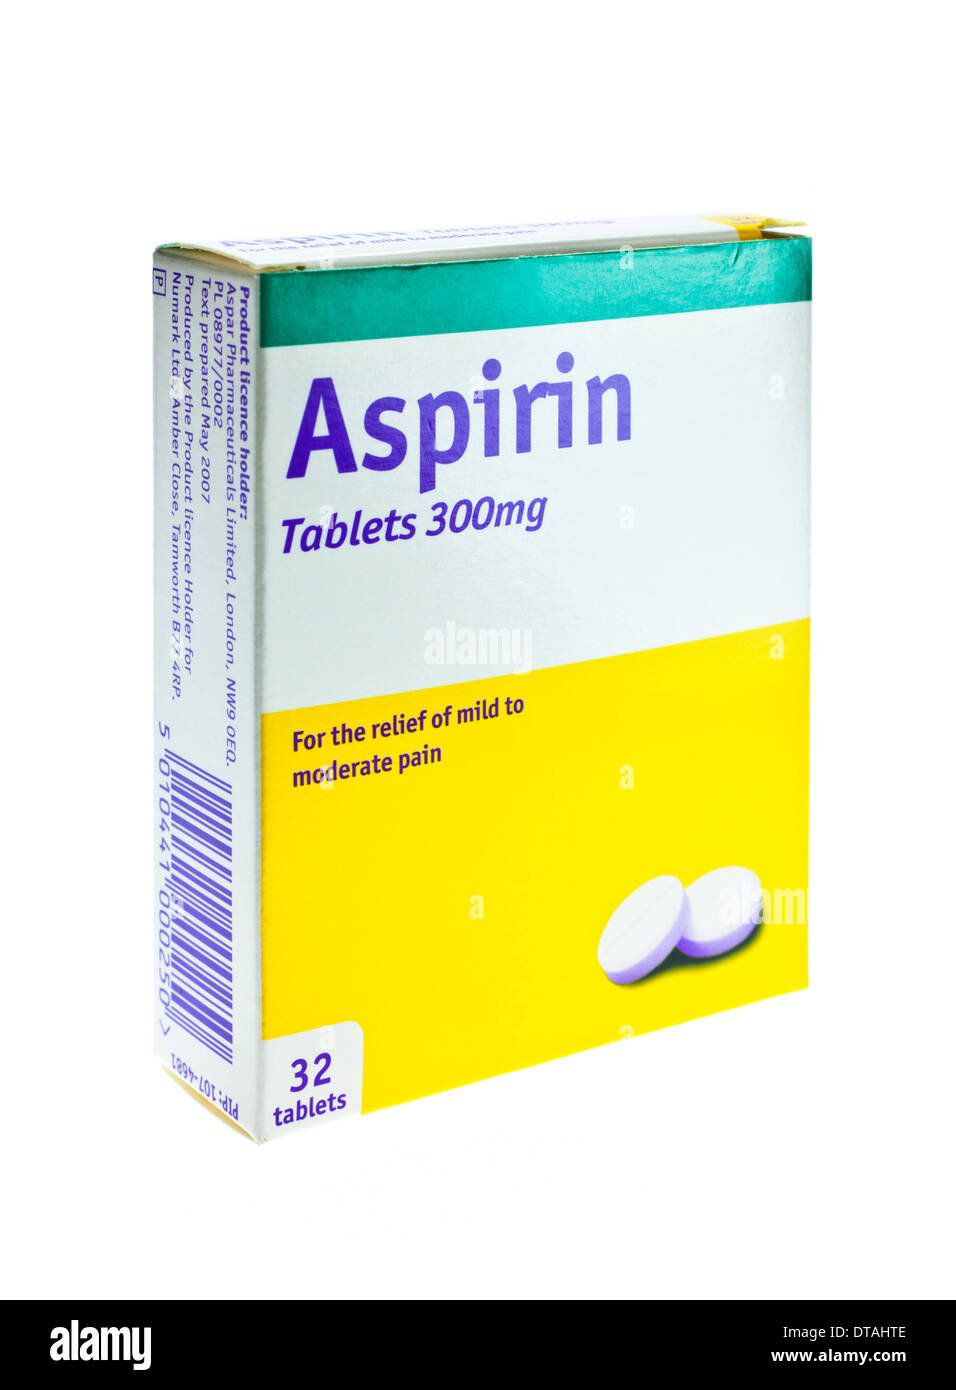 Aspirin tablets immagini e fotografie stock ad alta risoluzione - Alamy